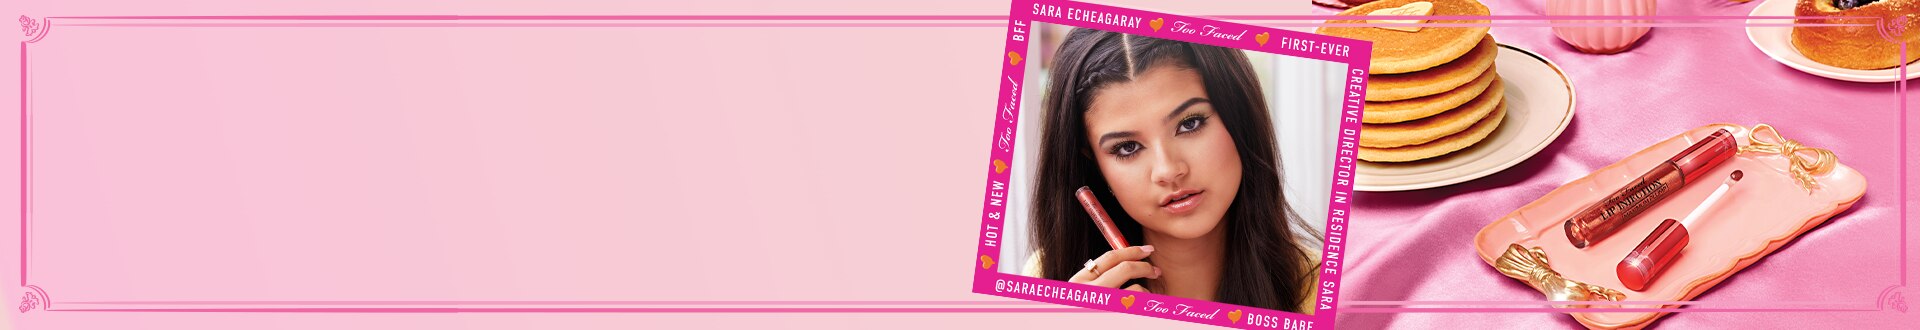 Sara Echeagaray and Lip Injection Lip Gloss